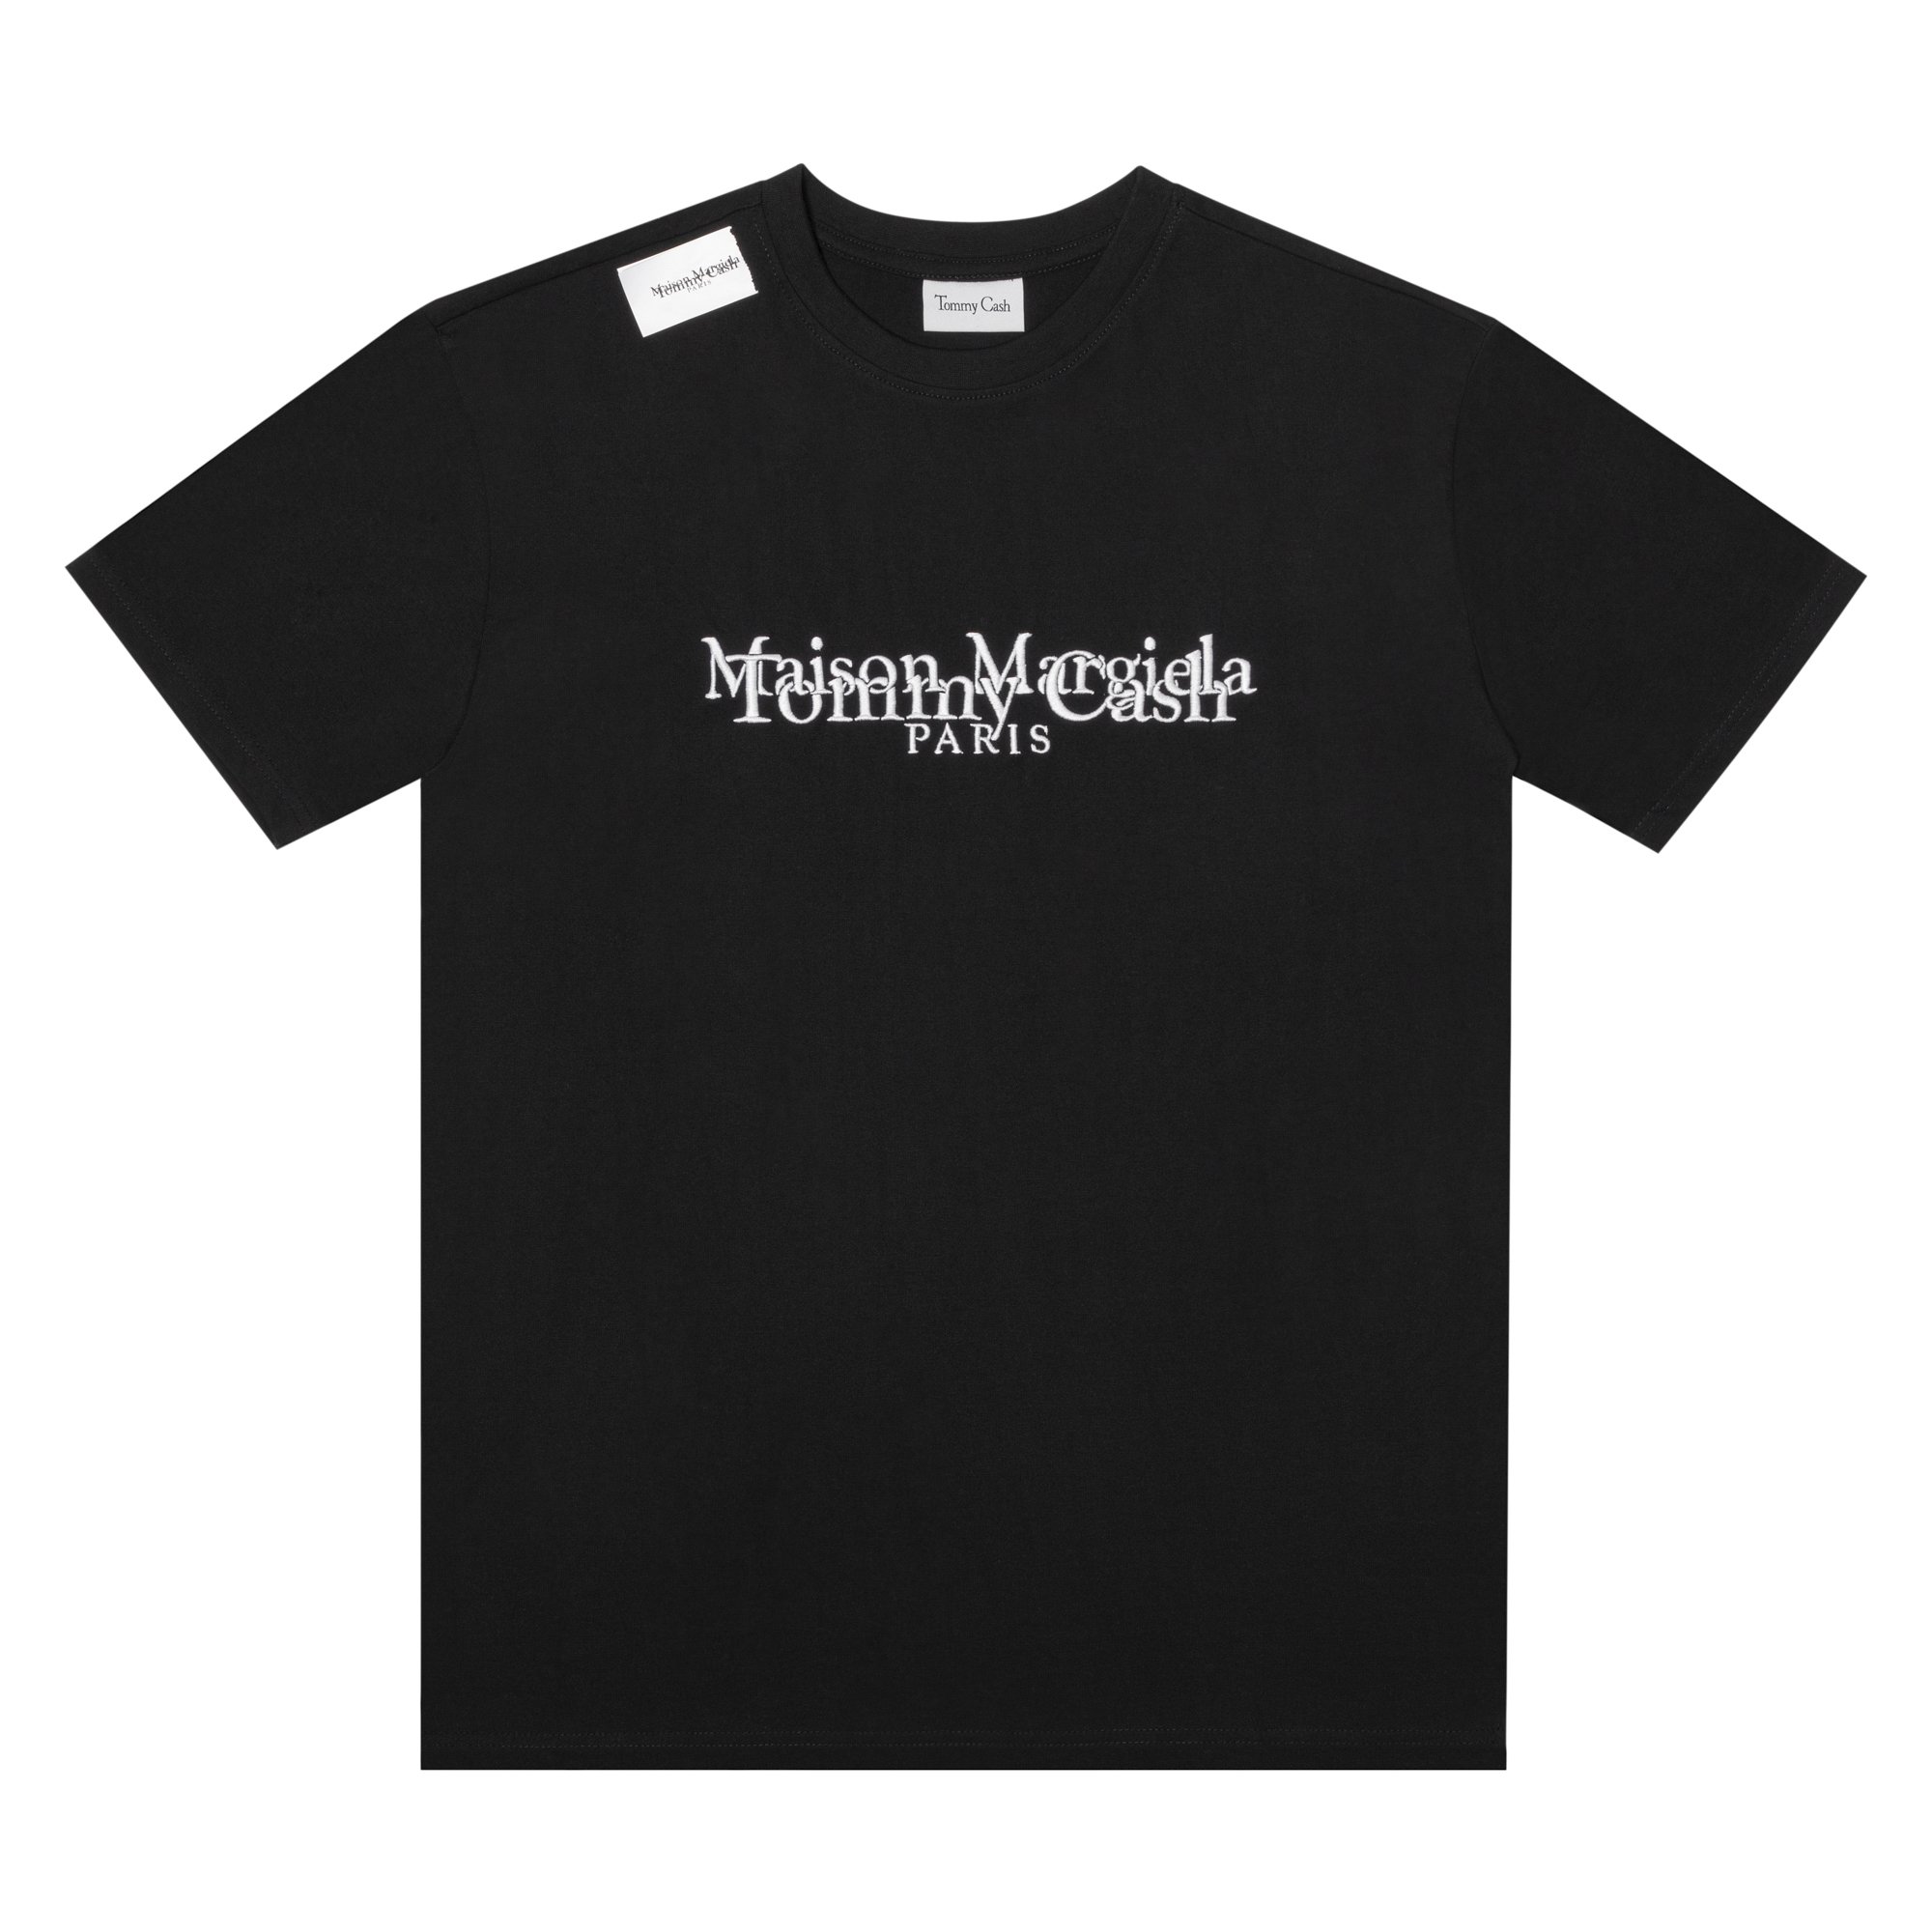 Tommy Cash x Maison Margiela T-shirt Black - SS21 Men's - US